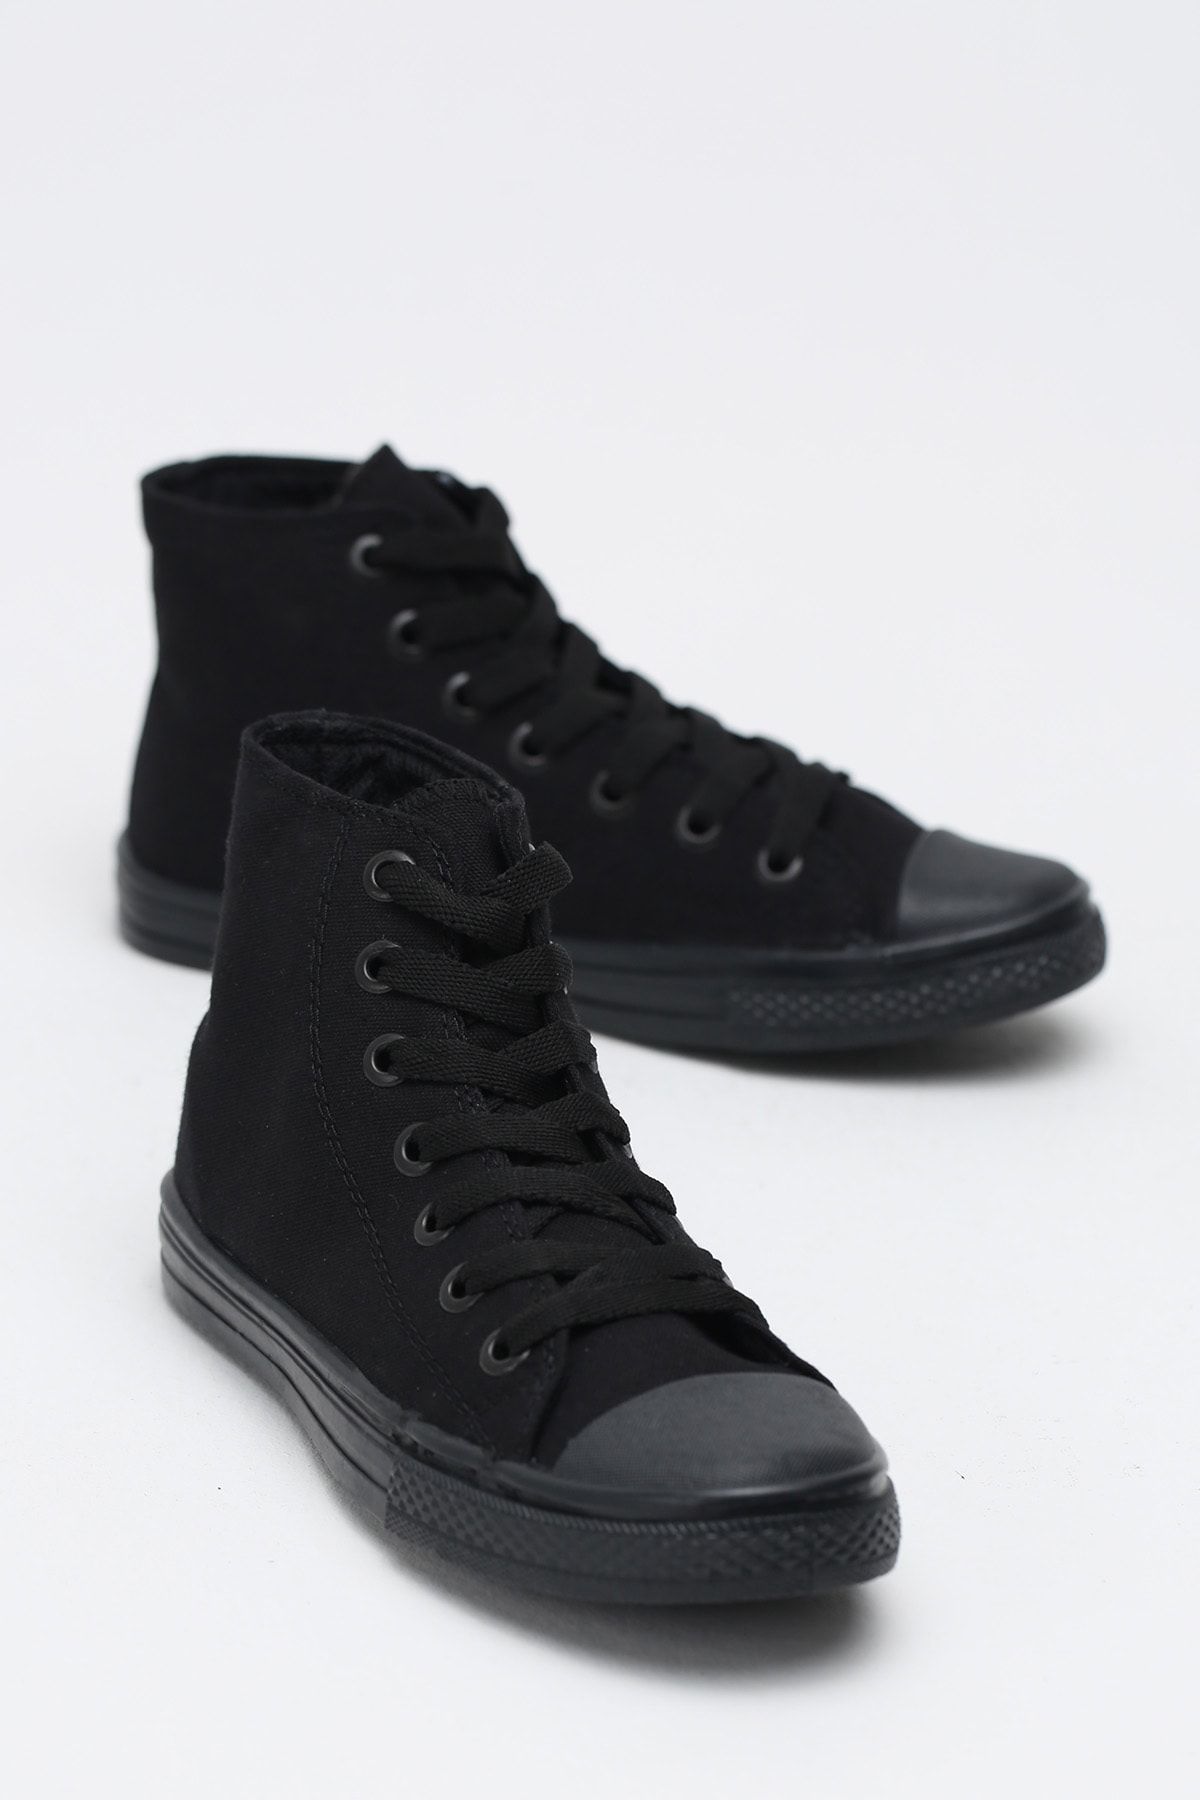 Ayakkabı Modası Siyah Kadın Ayakkabı M1003-19-110080R